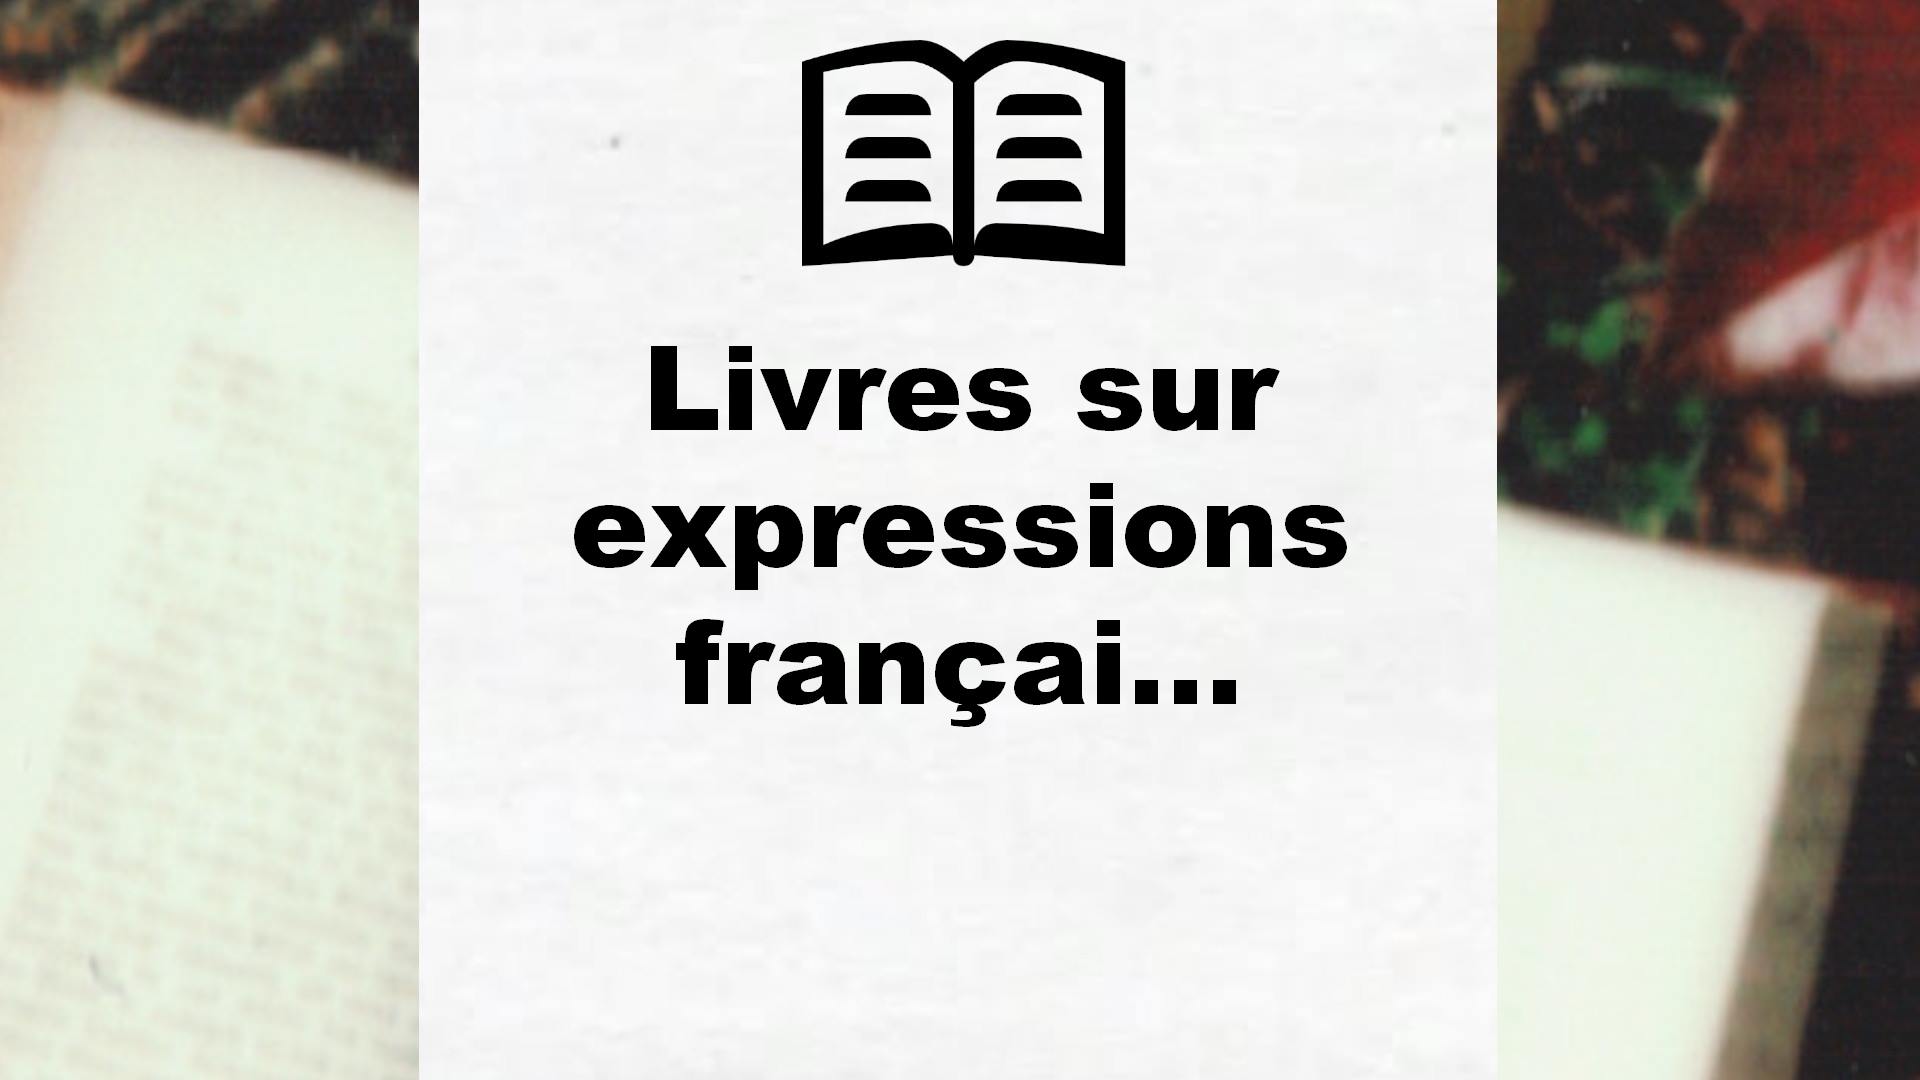 Livres sur expressions françaises anciennes